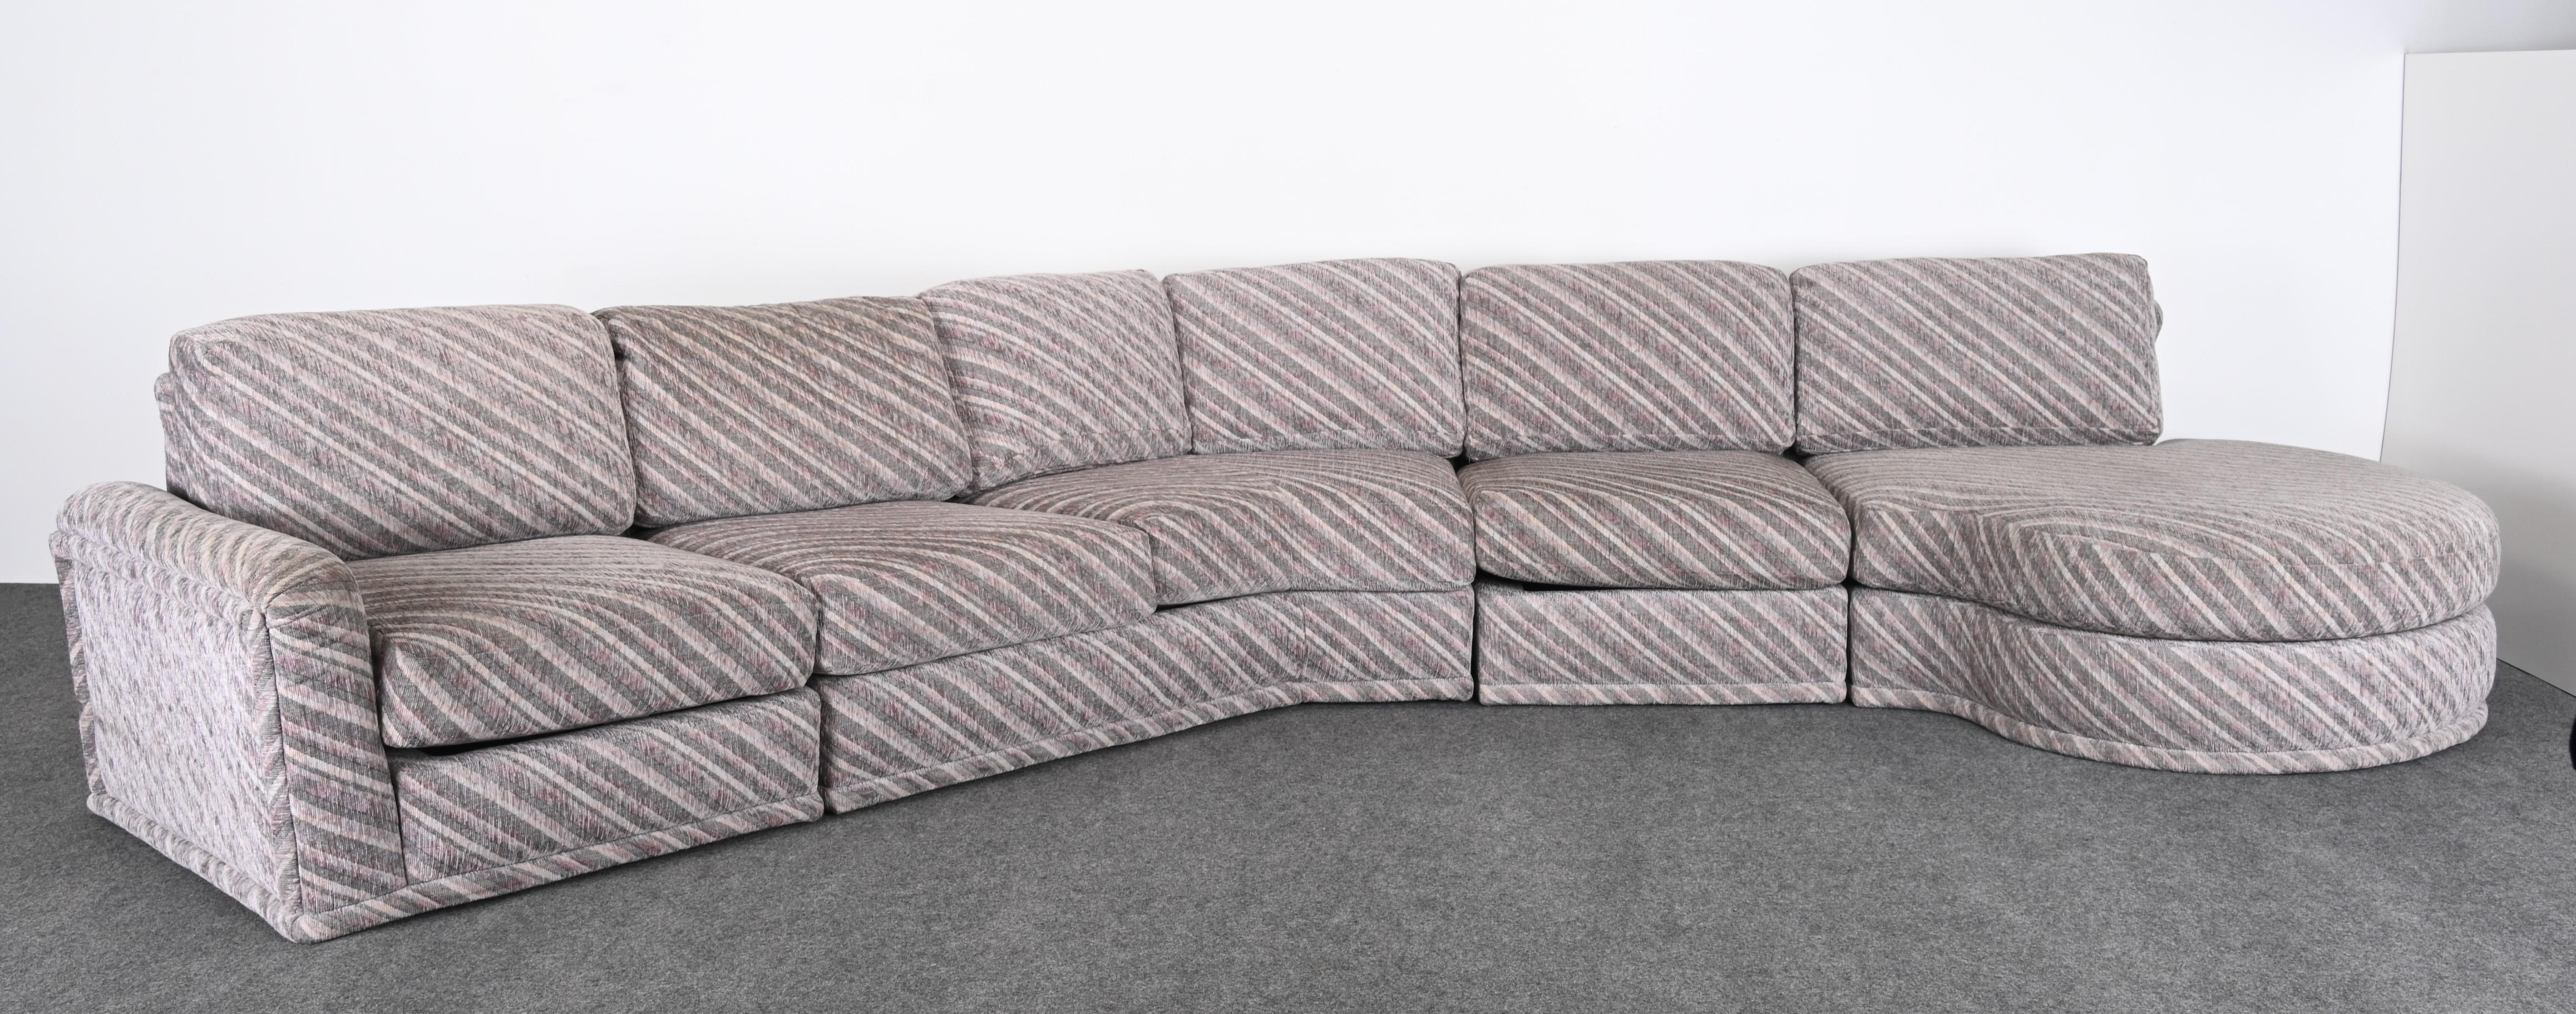 Canapé sectionnel post-moderne conçu par Milo Baughman pour Thayer Coggin. Ce fabuleux canapé provient d'une maison d'époque et a été fabriqué sur mesure vers 1990. Ce grand canapé dispose de pièces supplémentaires qui peuvent être utilisées